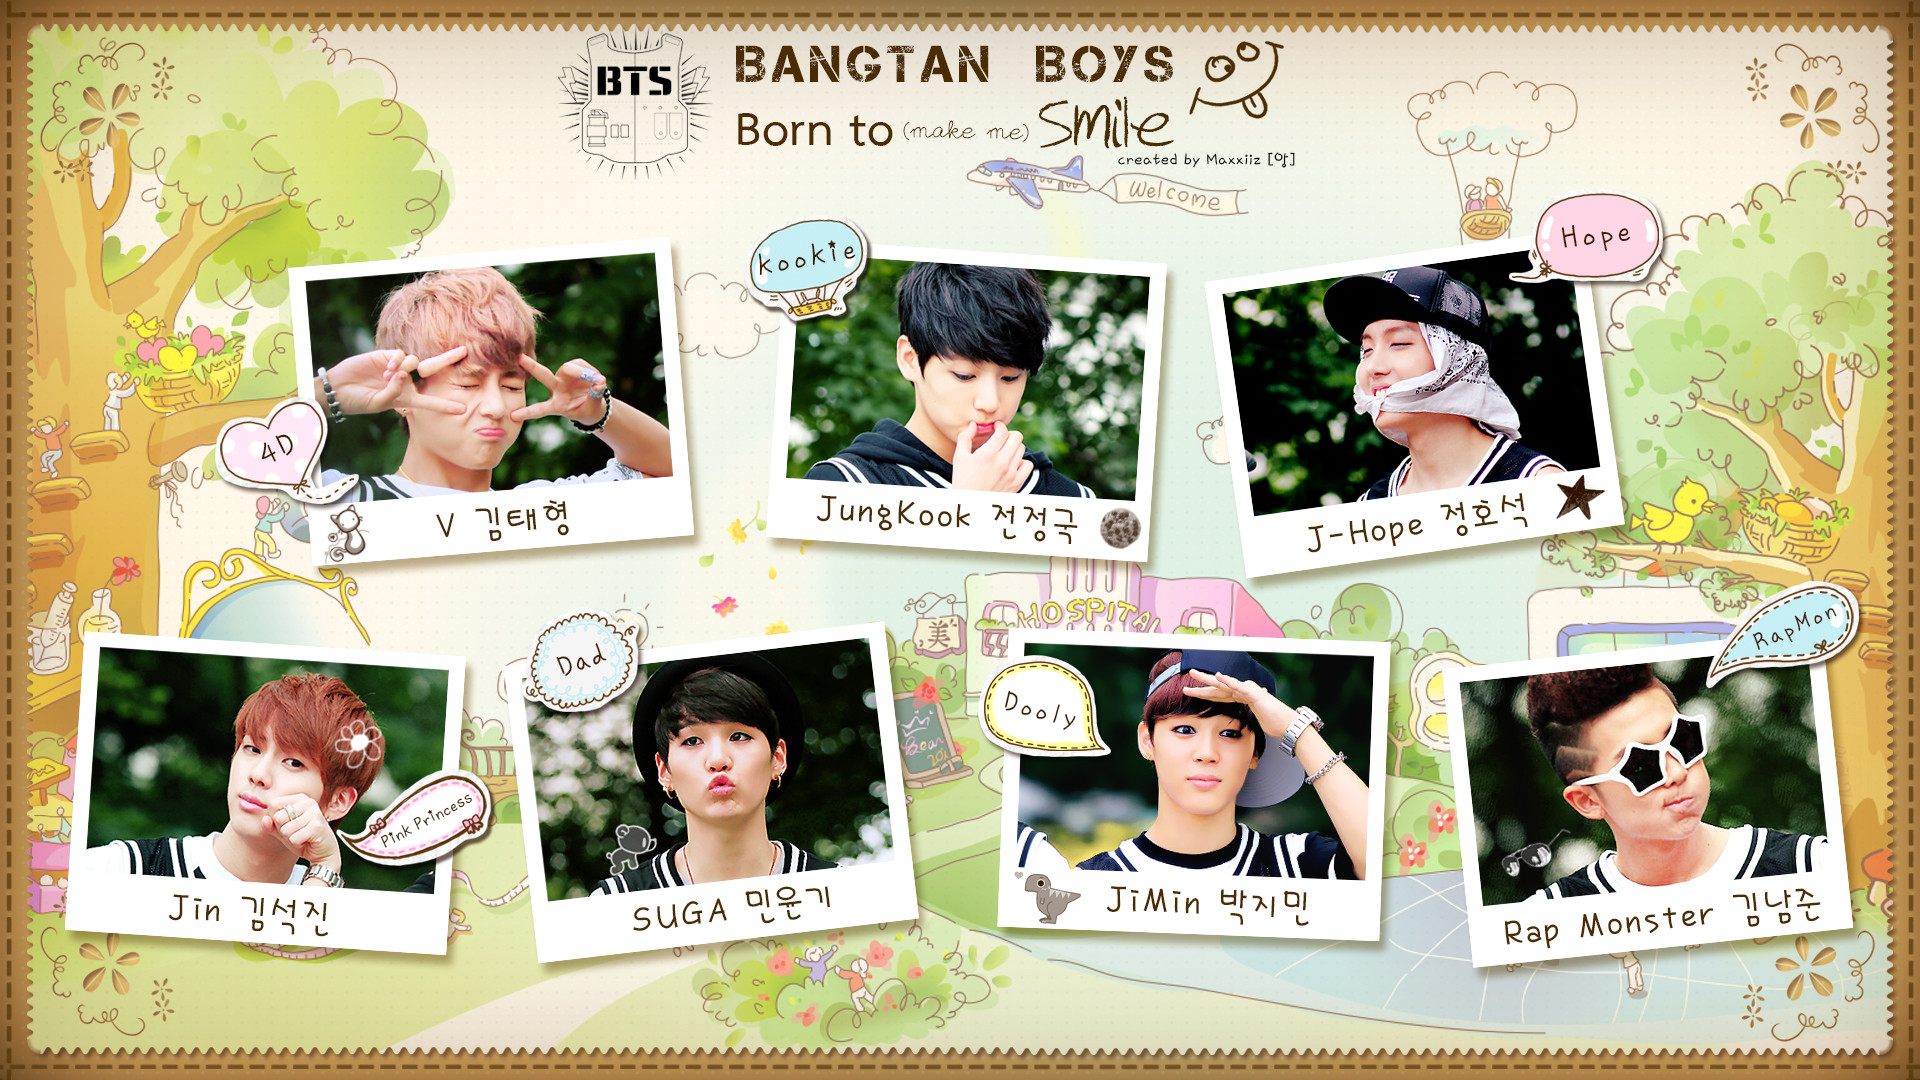 1920x1080 BTS images â¥ Bangtan Boys!~ â¥ HD wallpaper and background photos